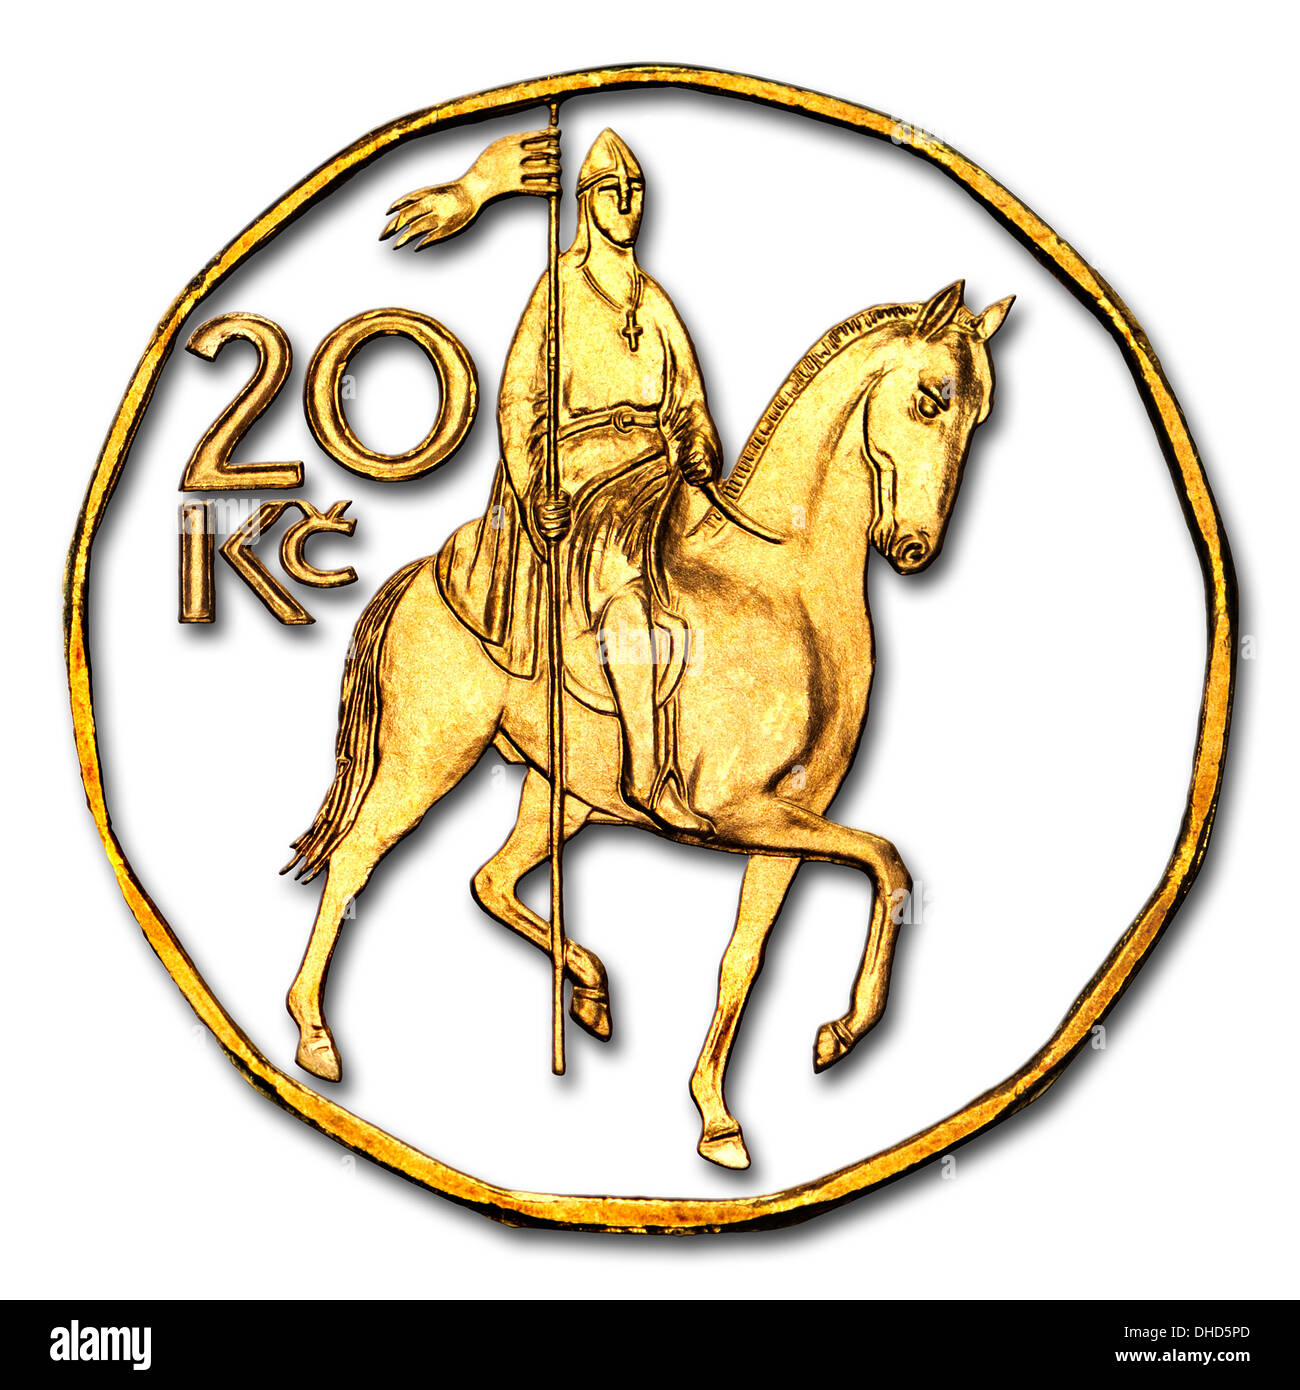 King Wenceslas - vom Pferderücken aus tschechischen 20 Kc Münze. Nach der Statue auf dem Wenzelsplatz, Prag Stockfoto